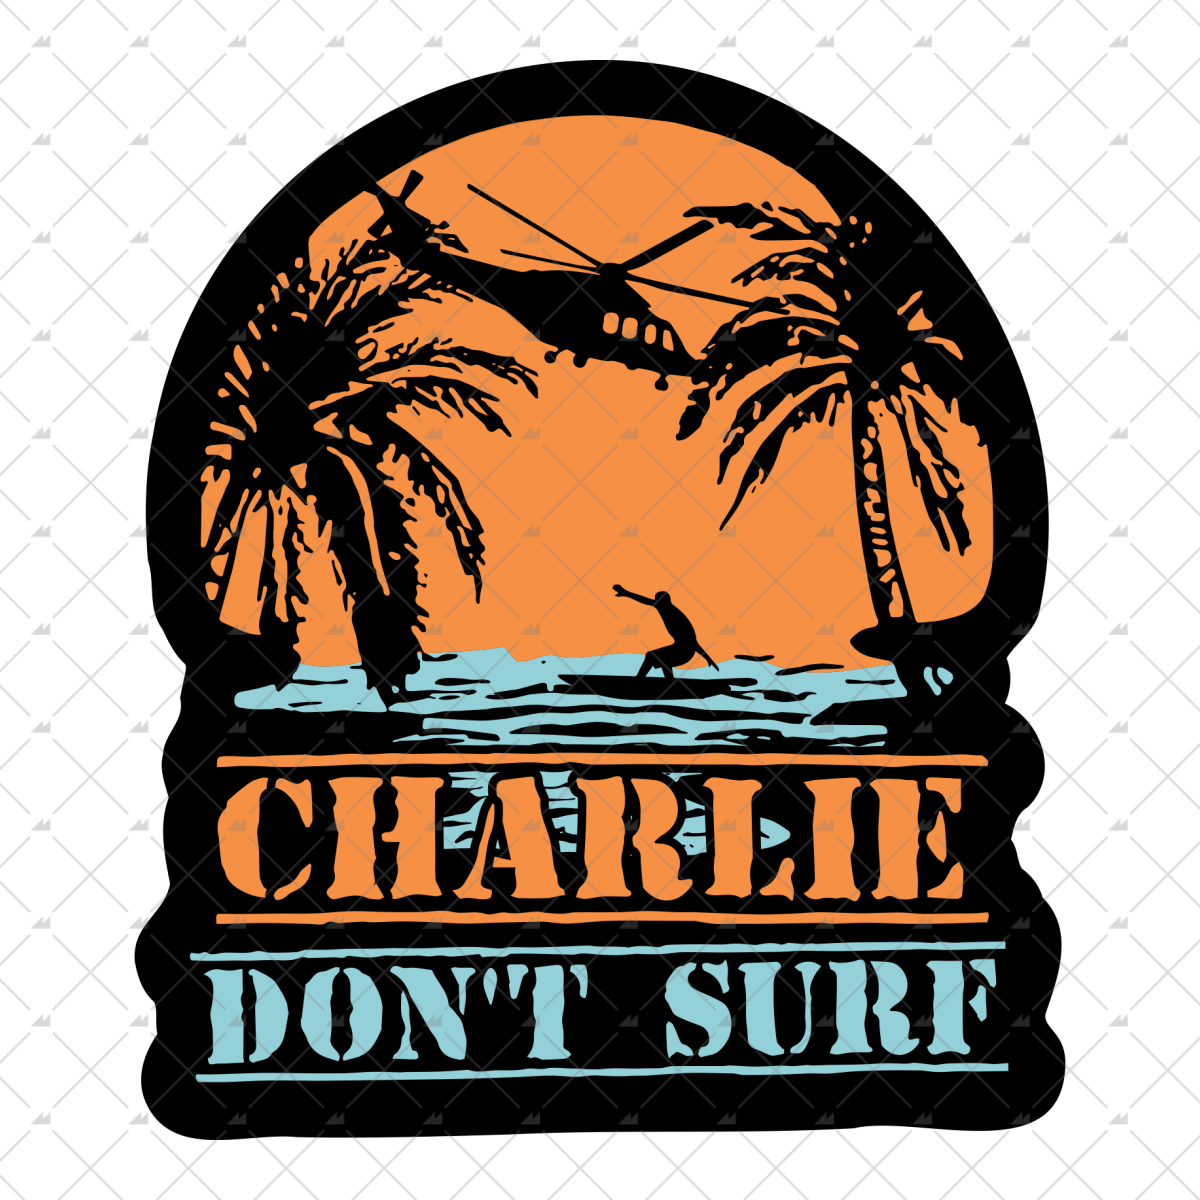 Charlie Don't Surf - Sticker